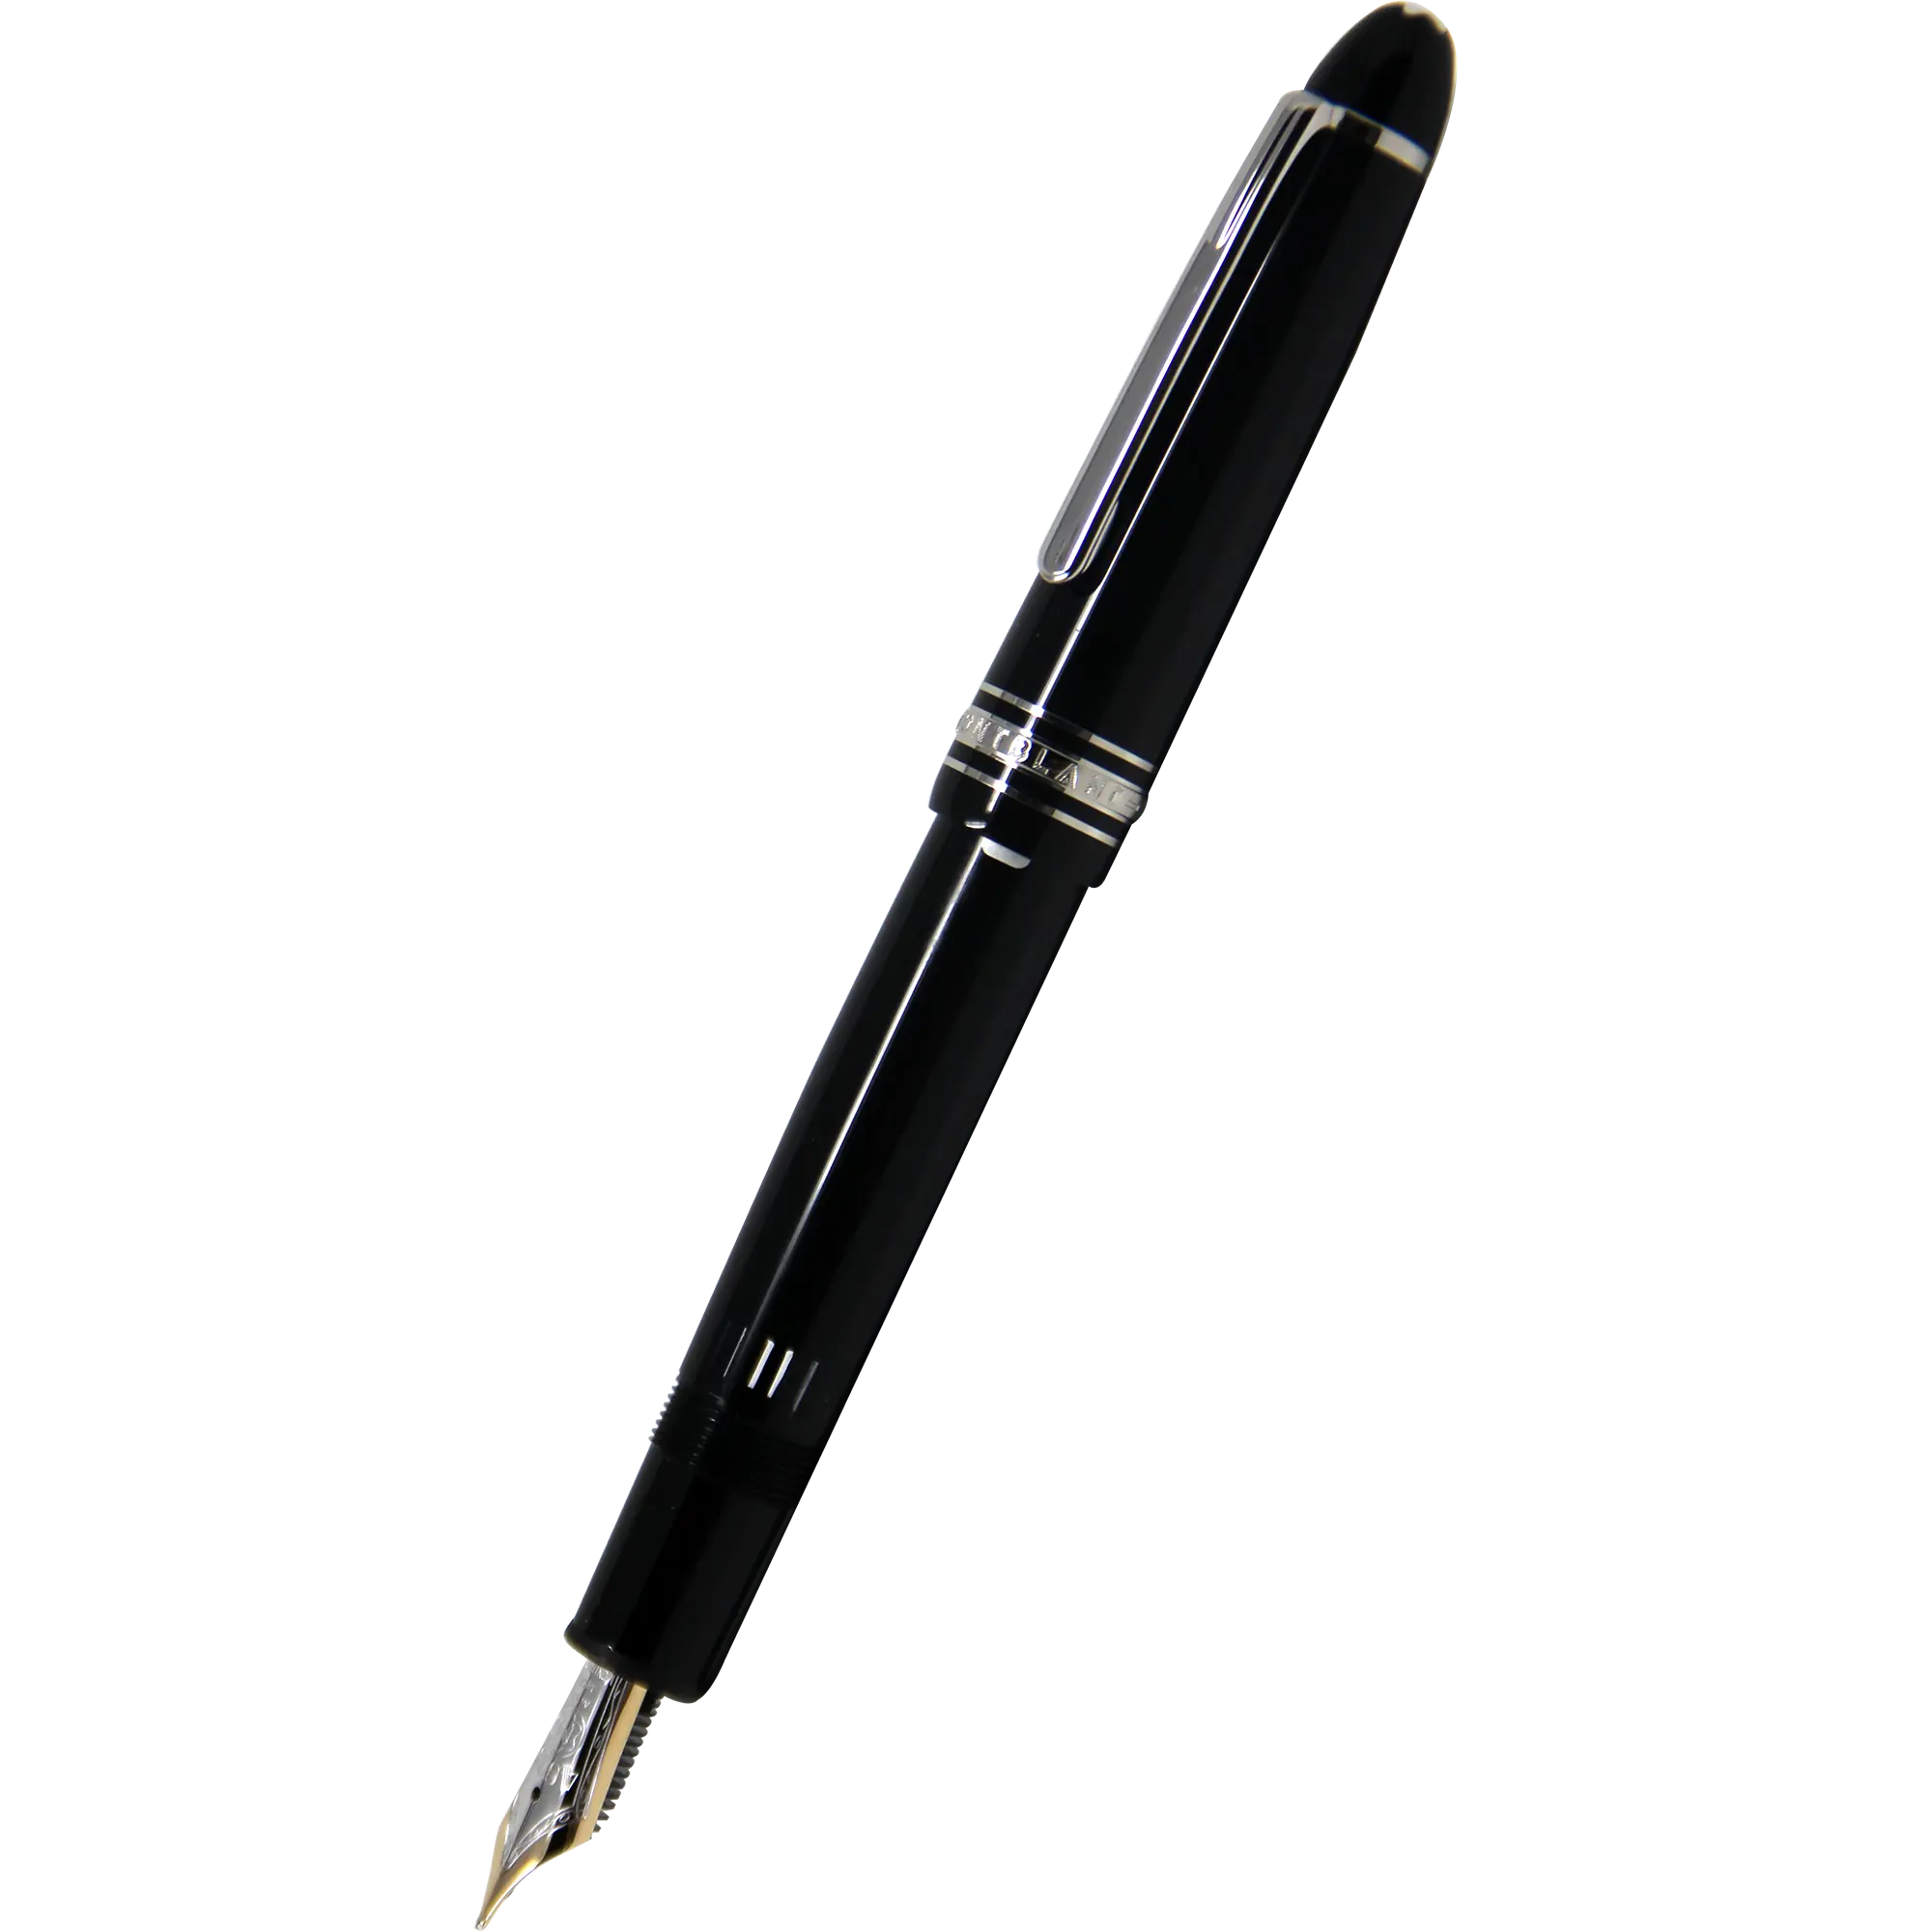 Montblanc Meisterstuck Fountain Pen - Black - Platinum Trim - Legrand - 146 size-Pen Boutique Ltd